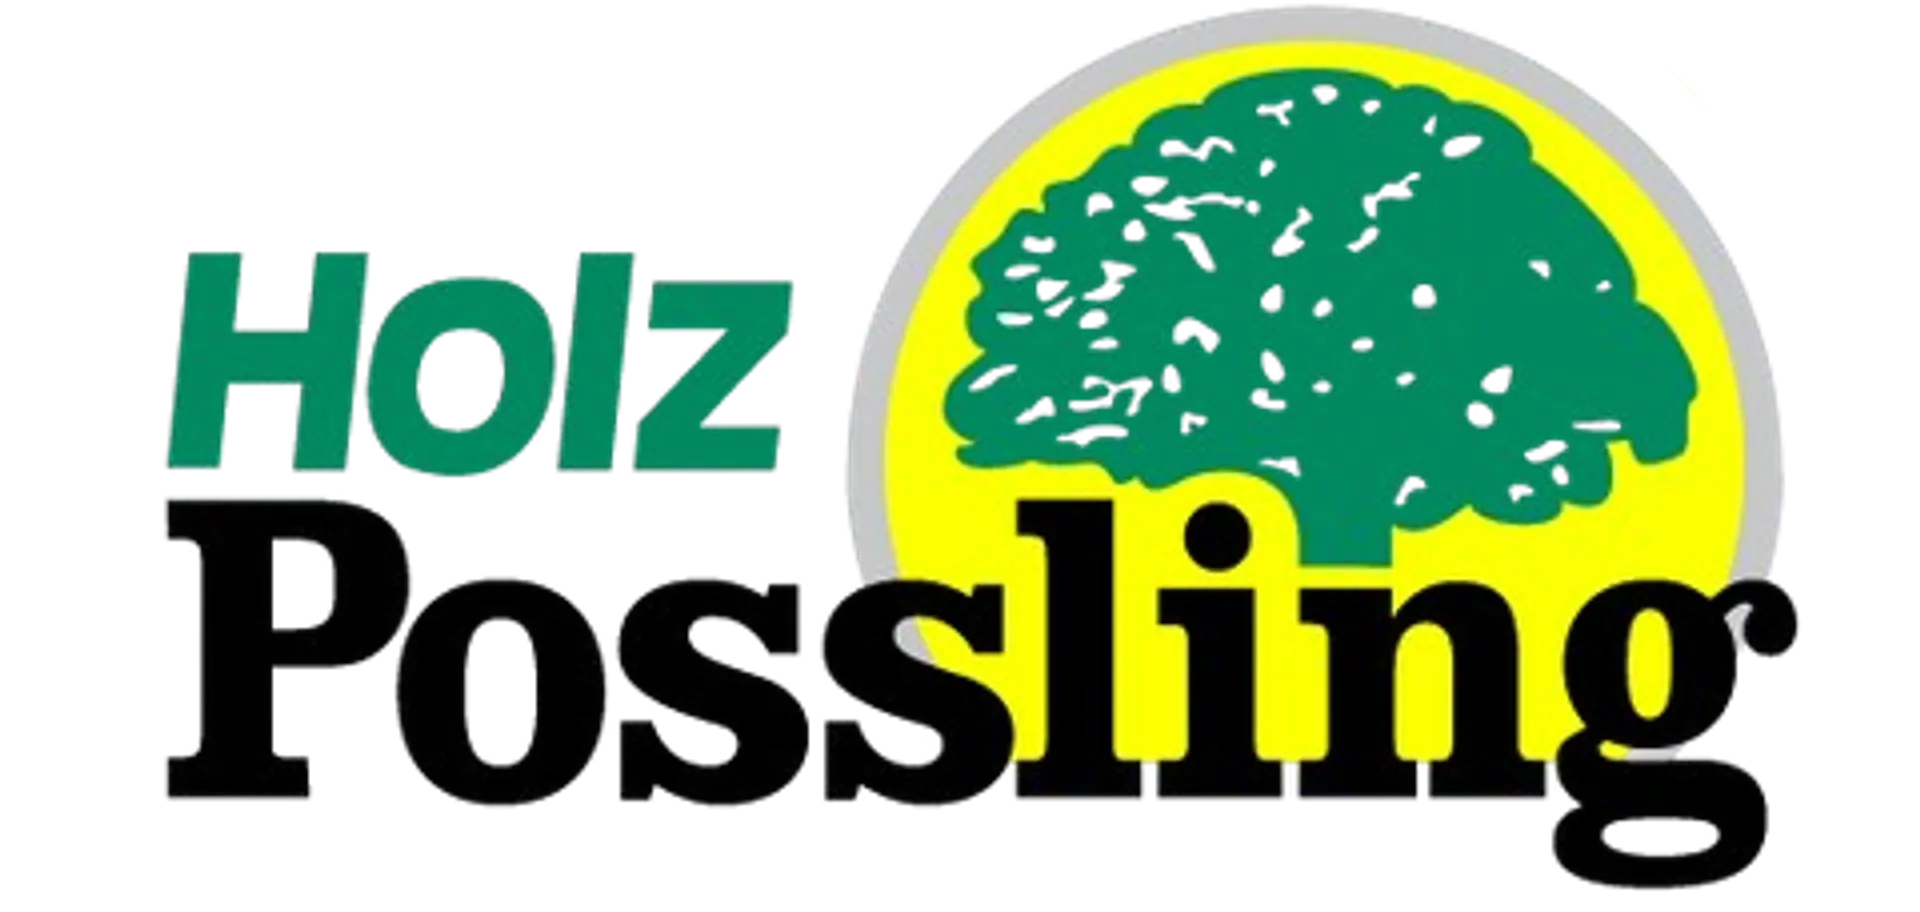 HOLZ POSSLING logo die aktuell Flugblatt